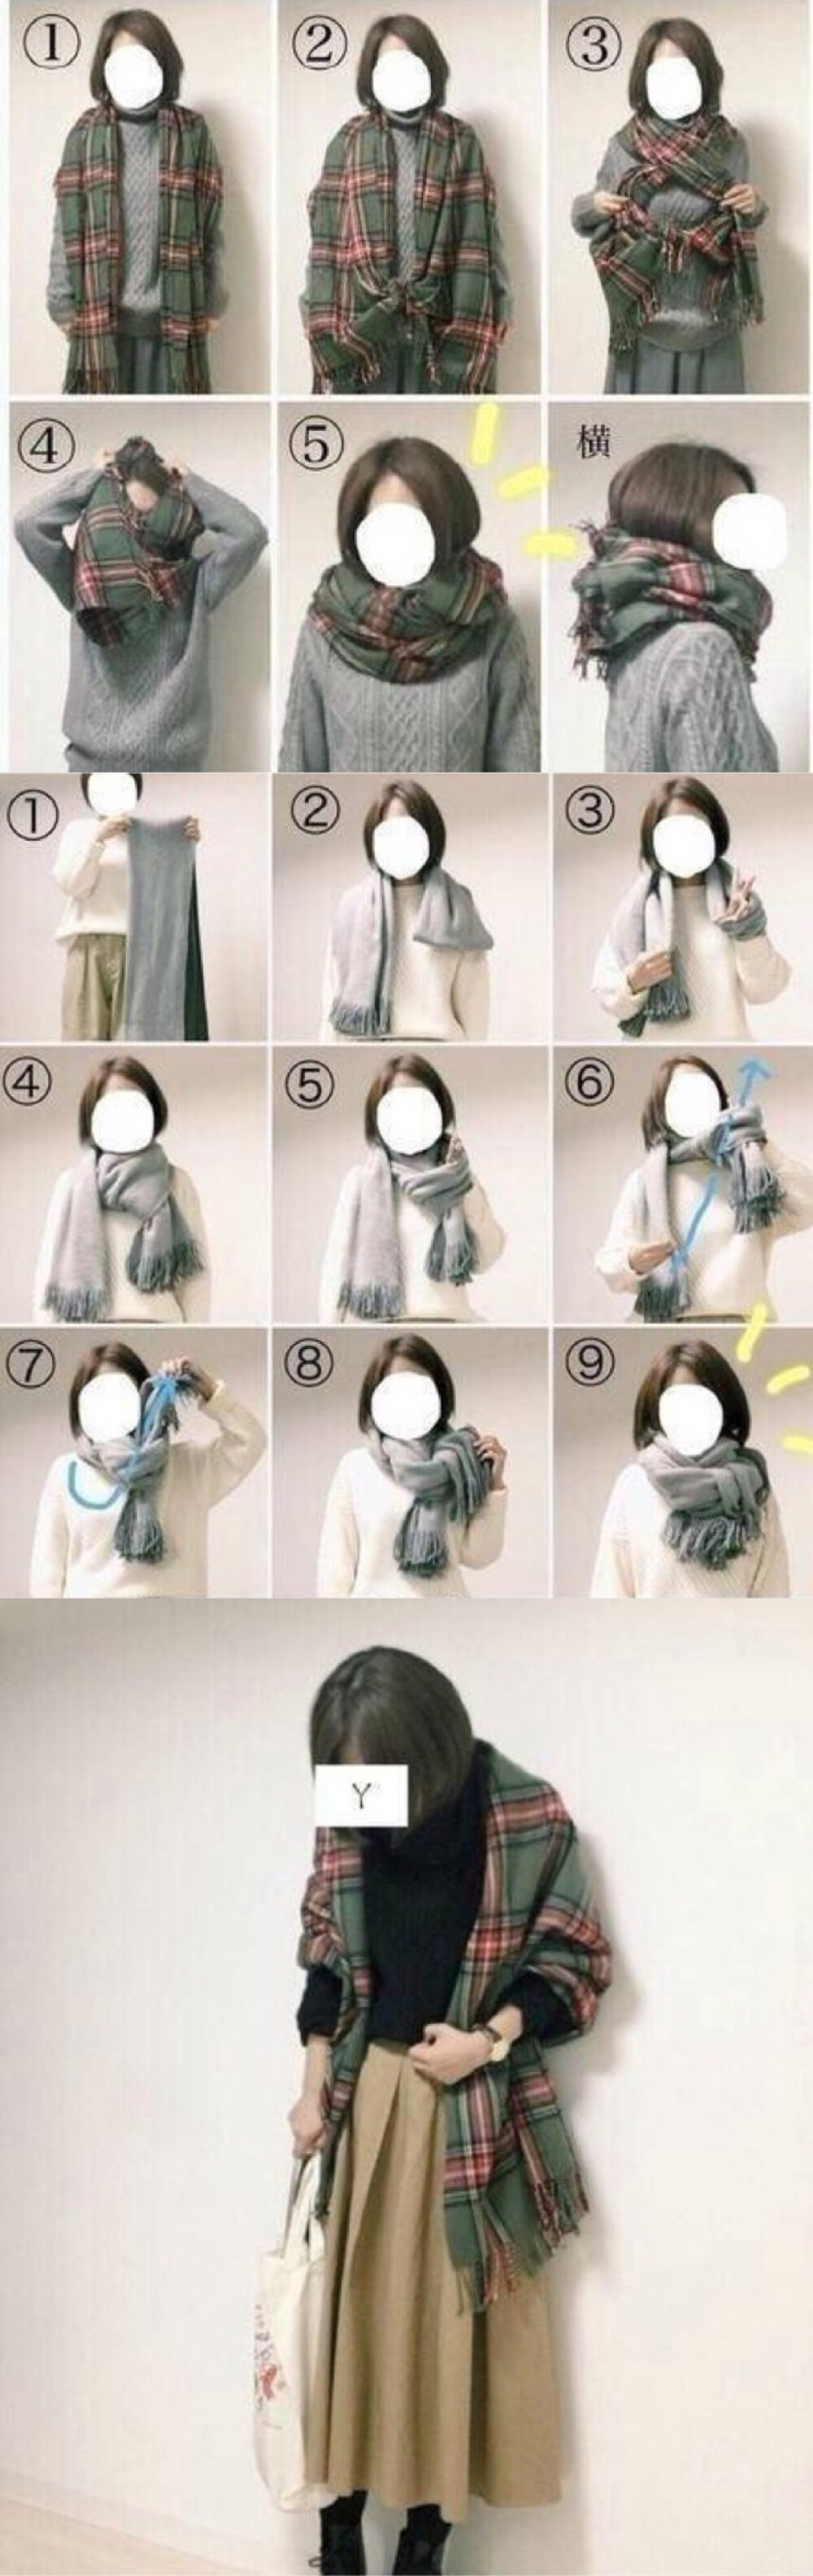 系短围巾的方法图片